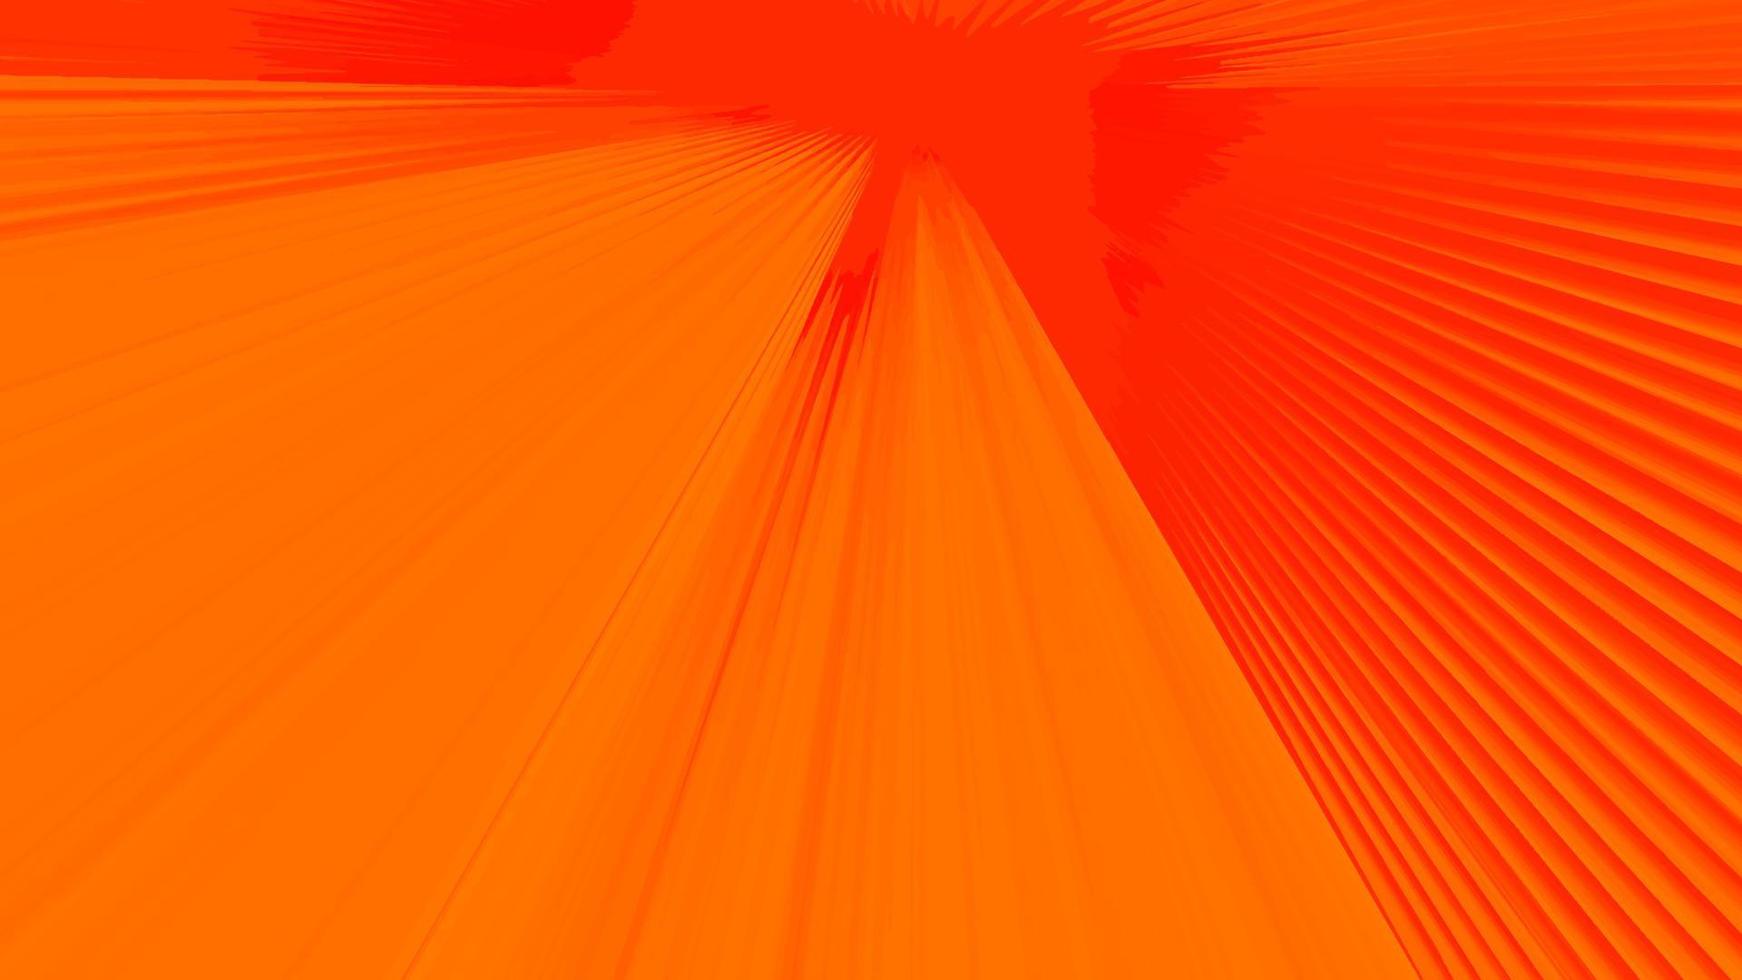 sfondo astratto moderno arancione. moderno concetto di design astratto arancione del design della pagina web. facile da modificare. illustrazione vettoriale